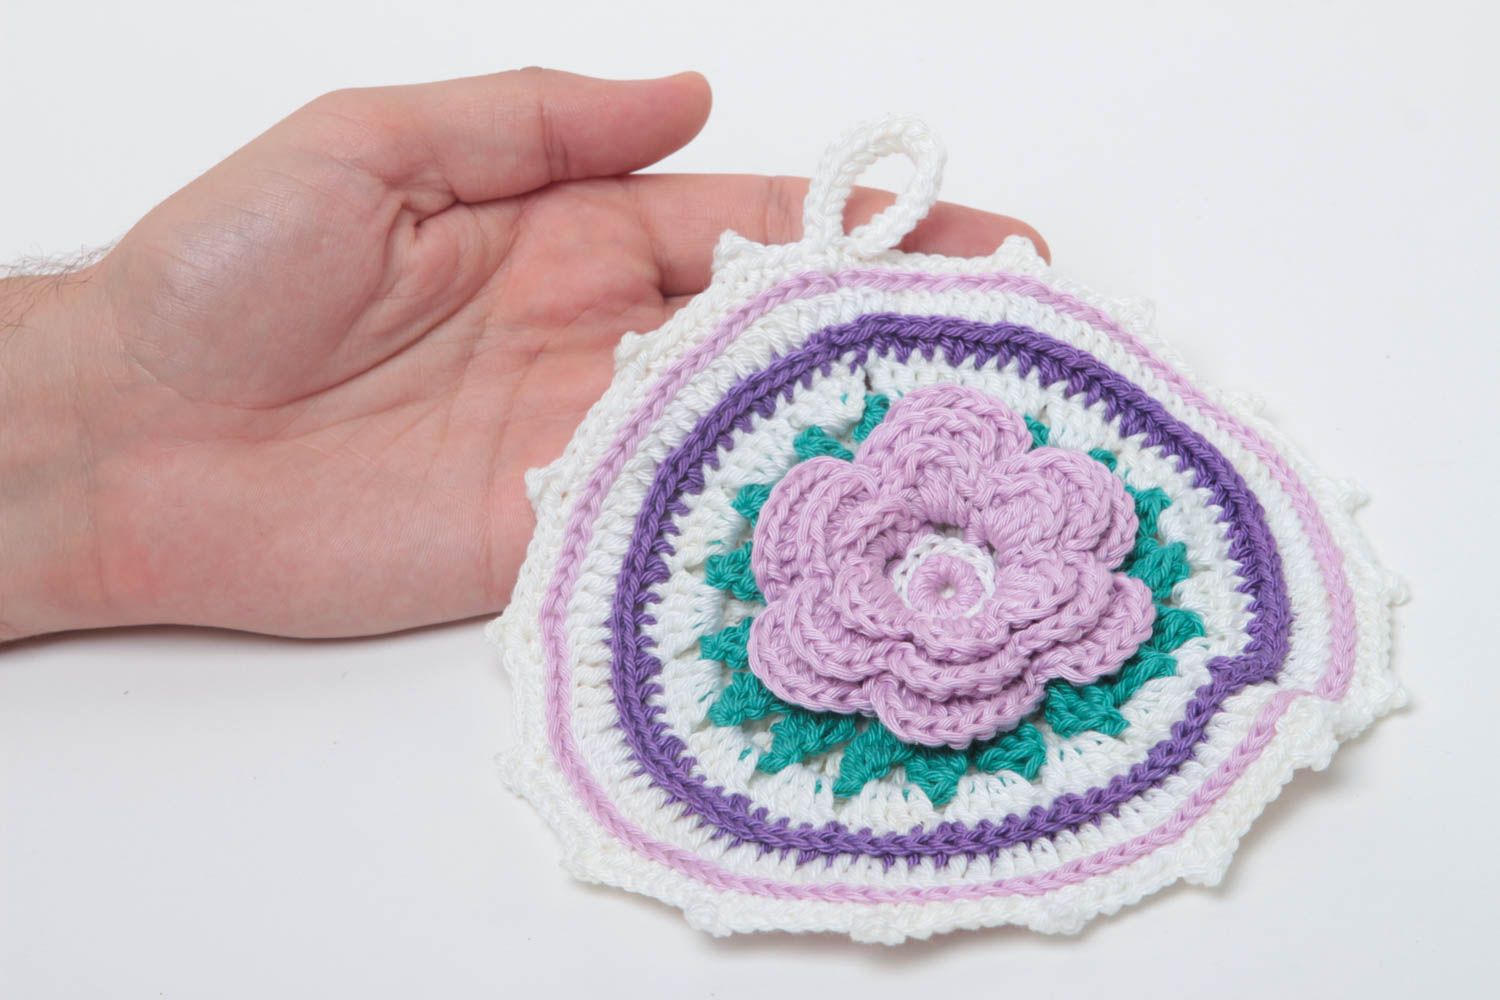 Unusual handmade pot holder homemade crochet potholder home goods gift ideas photo 5